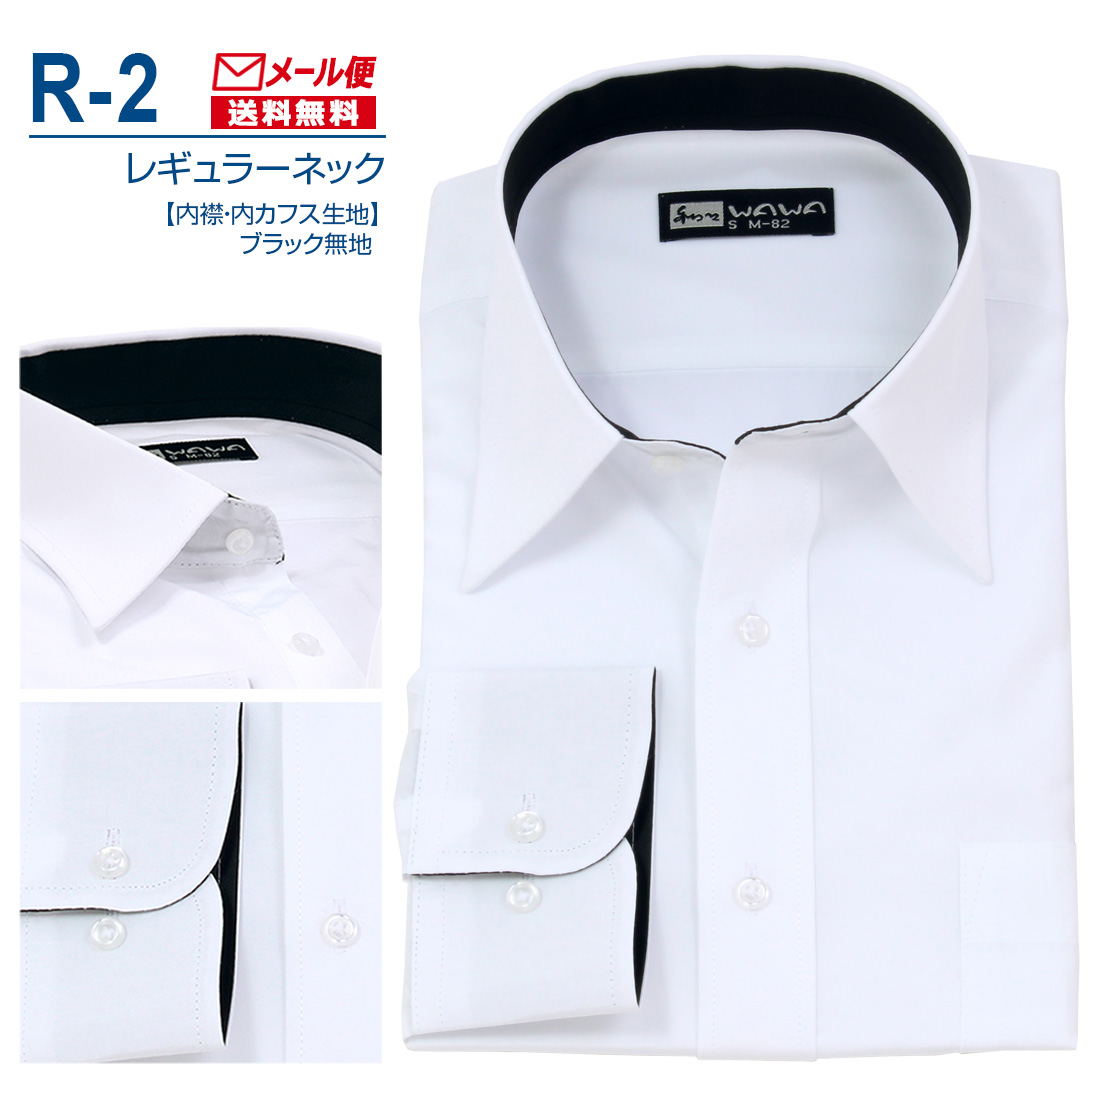 【メール便】 長袖 白無地 ワイシャツ メンズ レギュラーネック シャツ ホワイト 白 R-2 送料無料